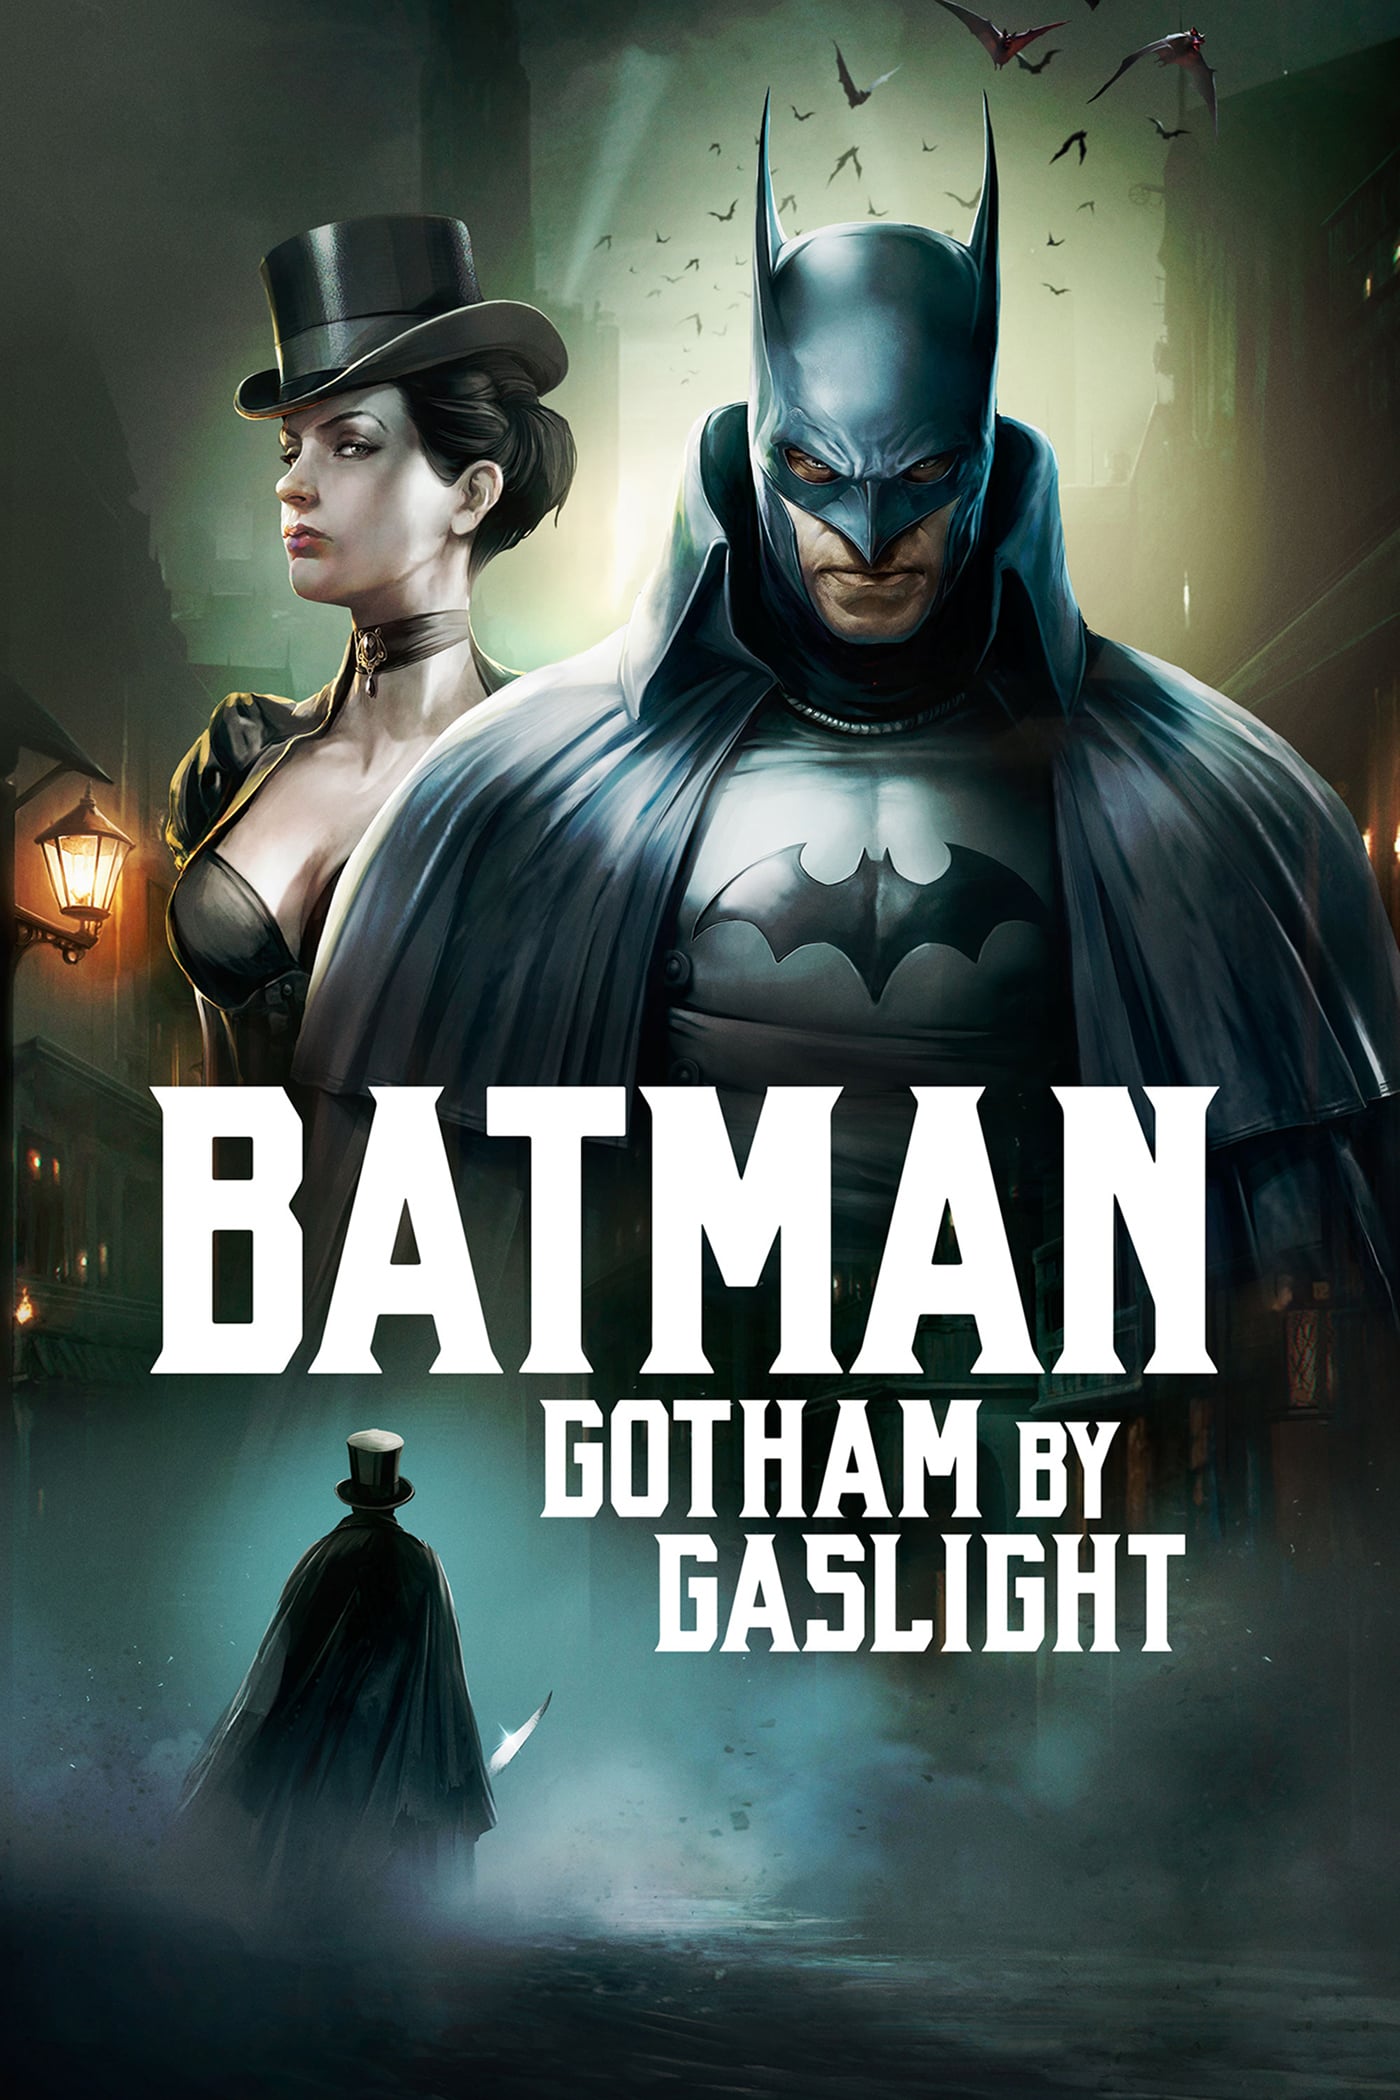 Caratula de Batman: Gotham by gaslight (Batman: Gotham a luz de gas) 